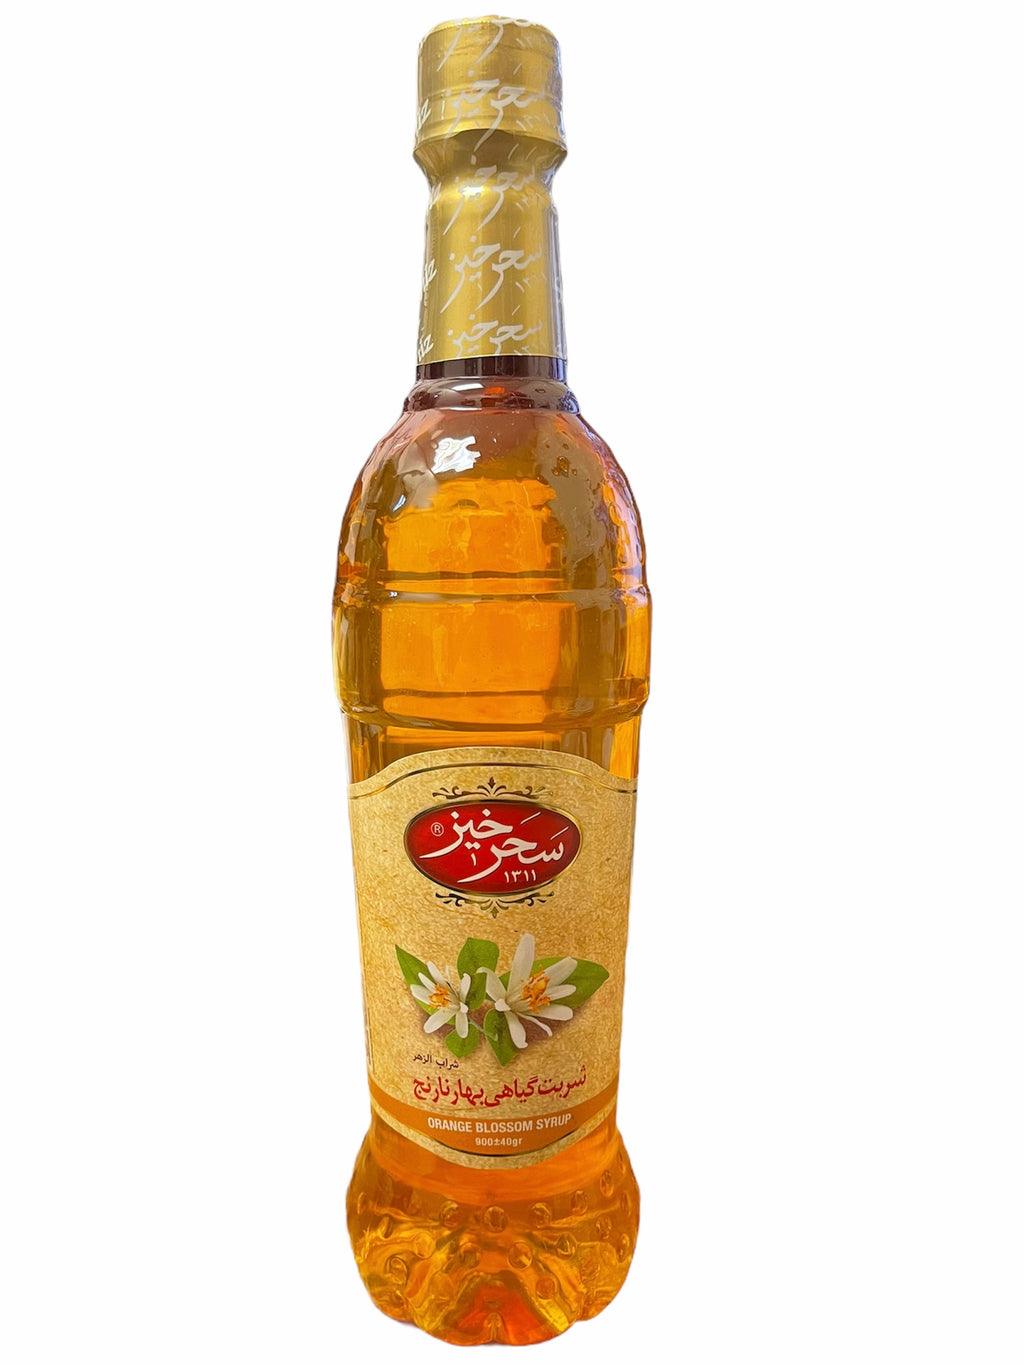 Saharkhiz Flavored Syrups